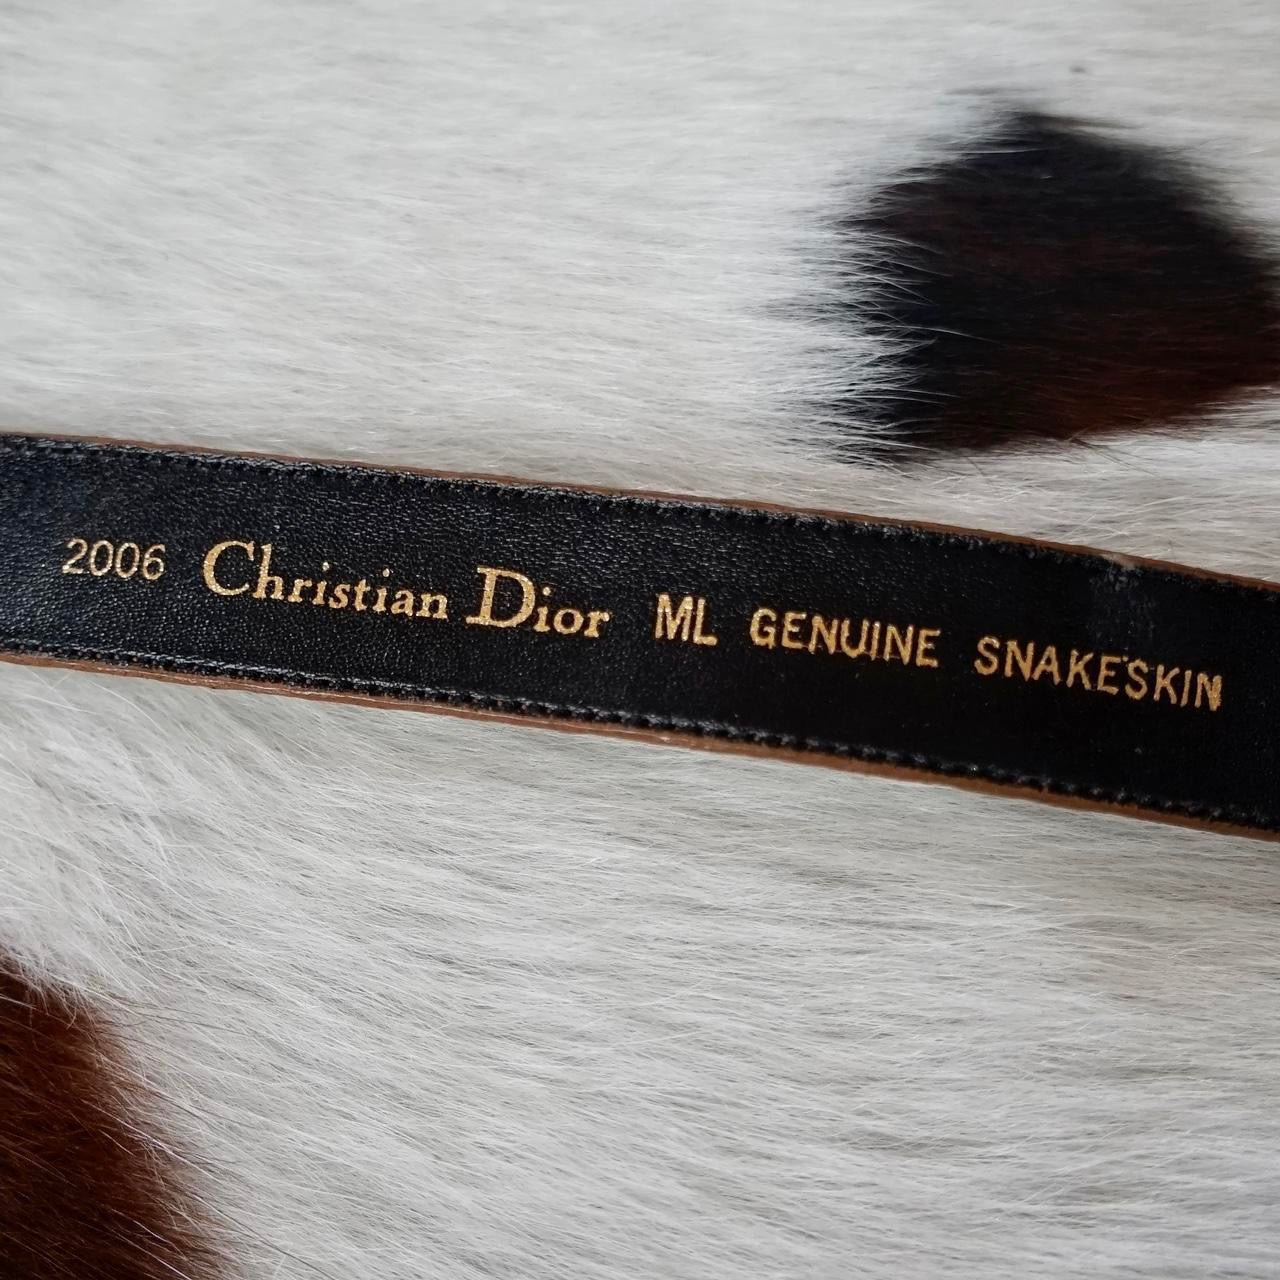 Vintage Christian Dior Snakeskin Leather Belt